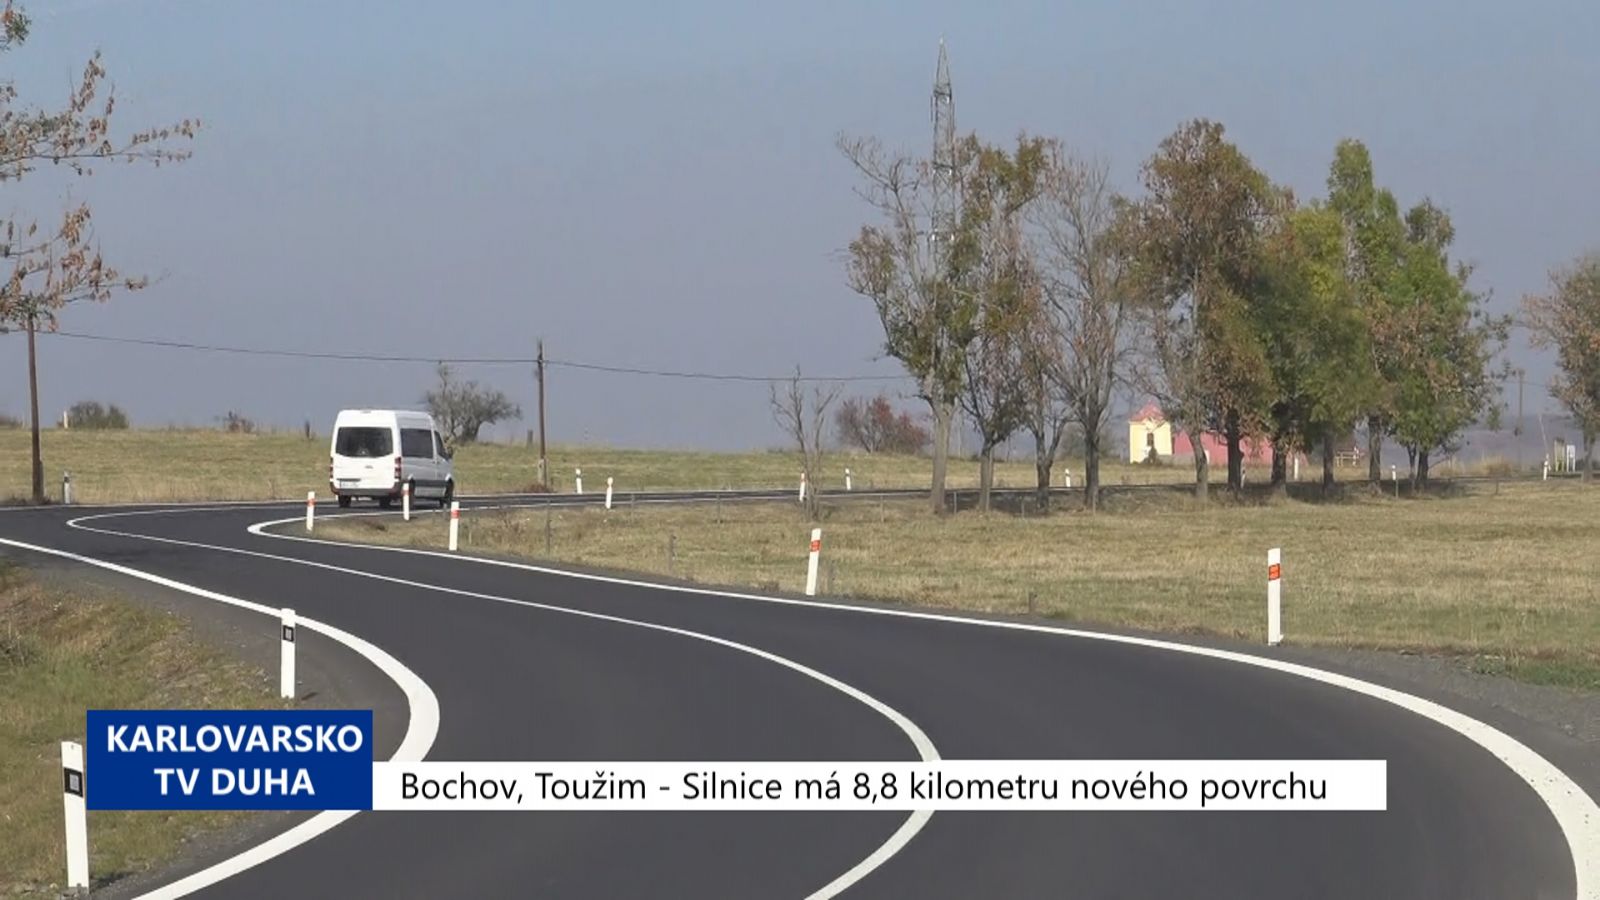 Bochov, Toužim: Silnice má 8,8 km nového povrchu (TV Západ)